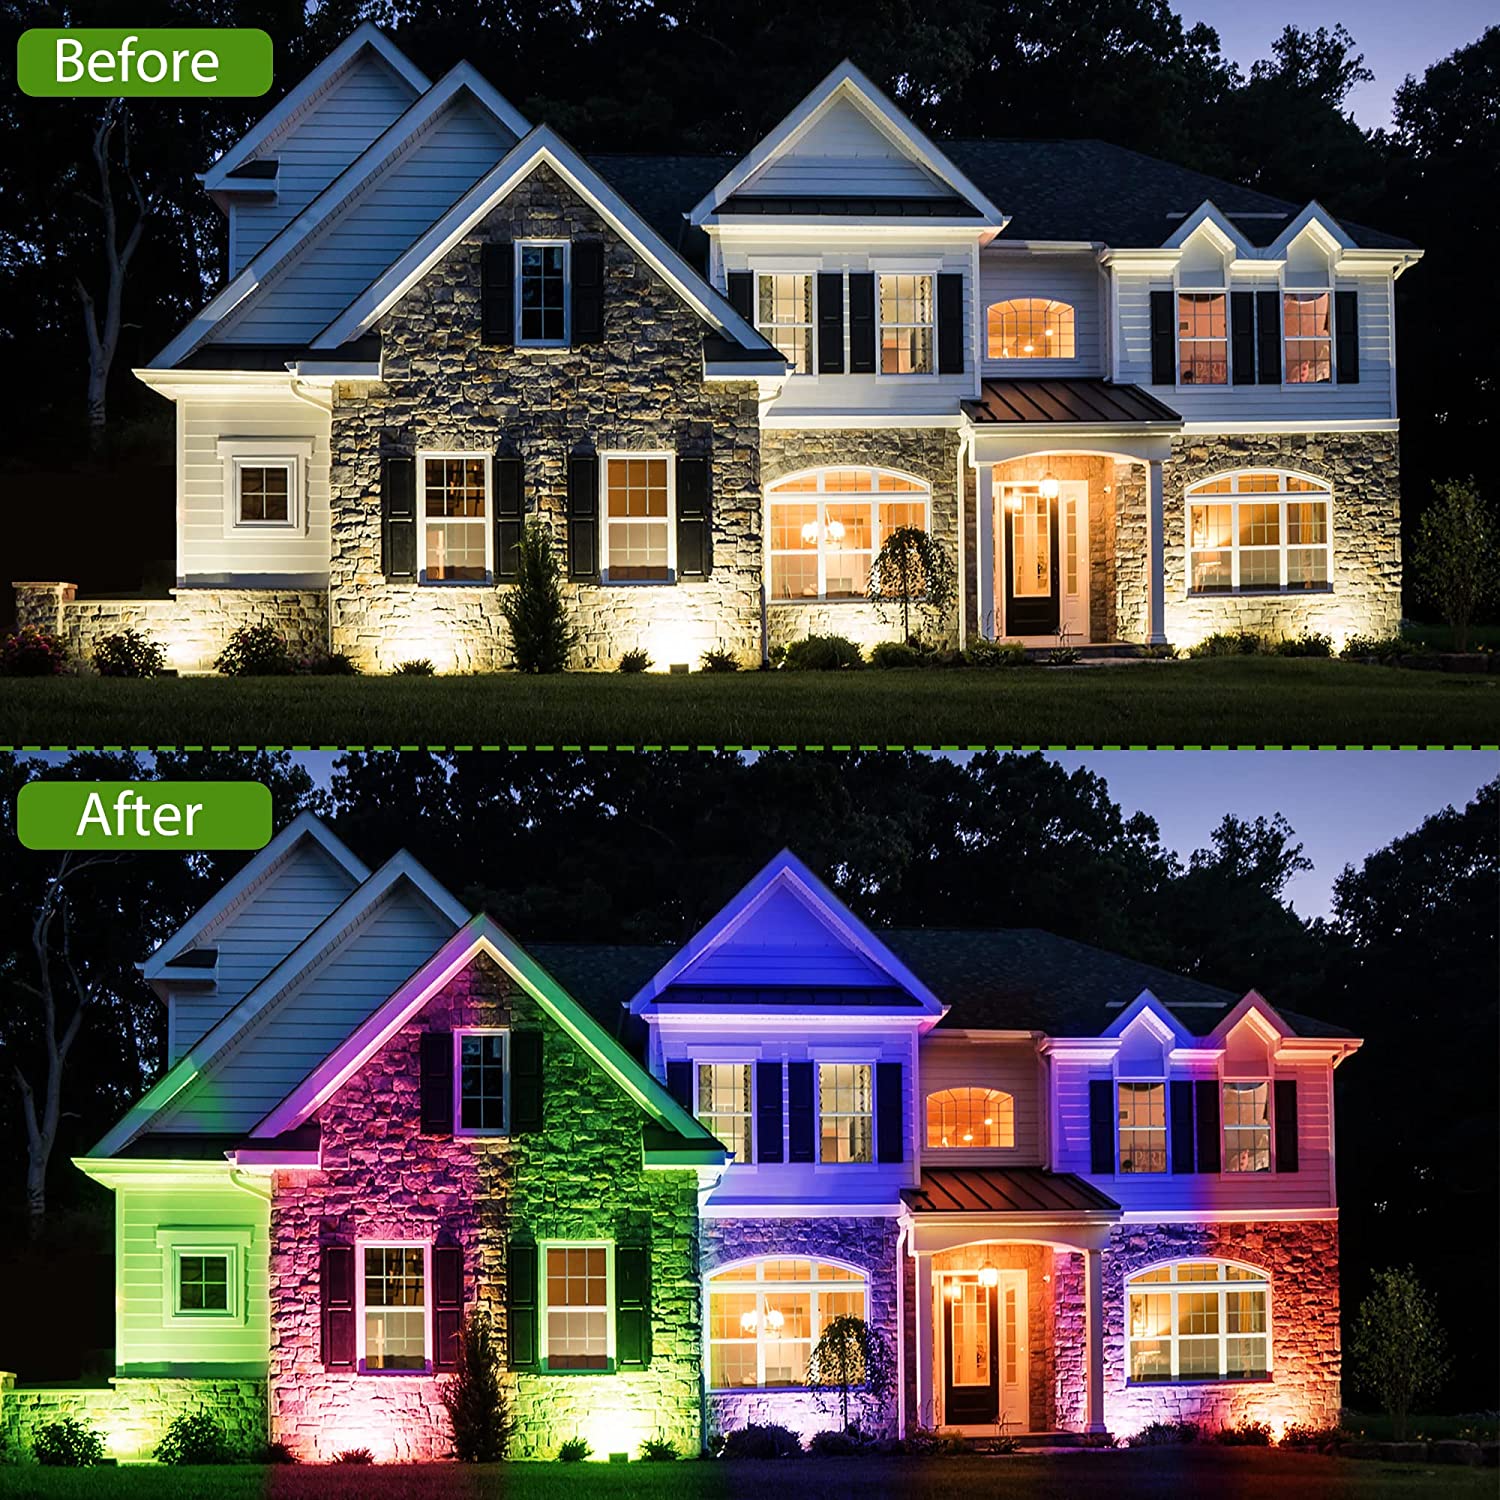 RGB 6 Color 10 LED Solar Lights IP 65 Waterproof Landscape Garden Light